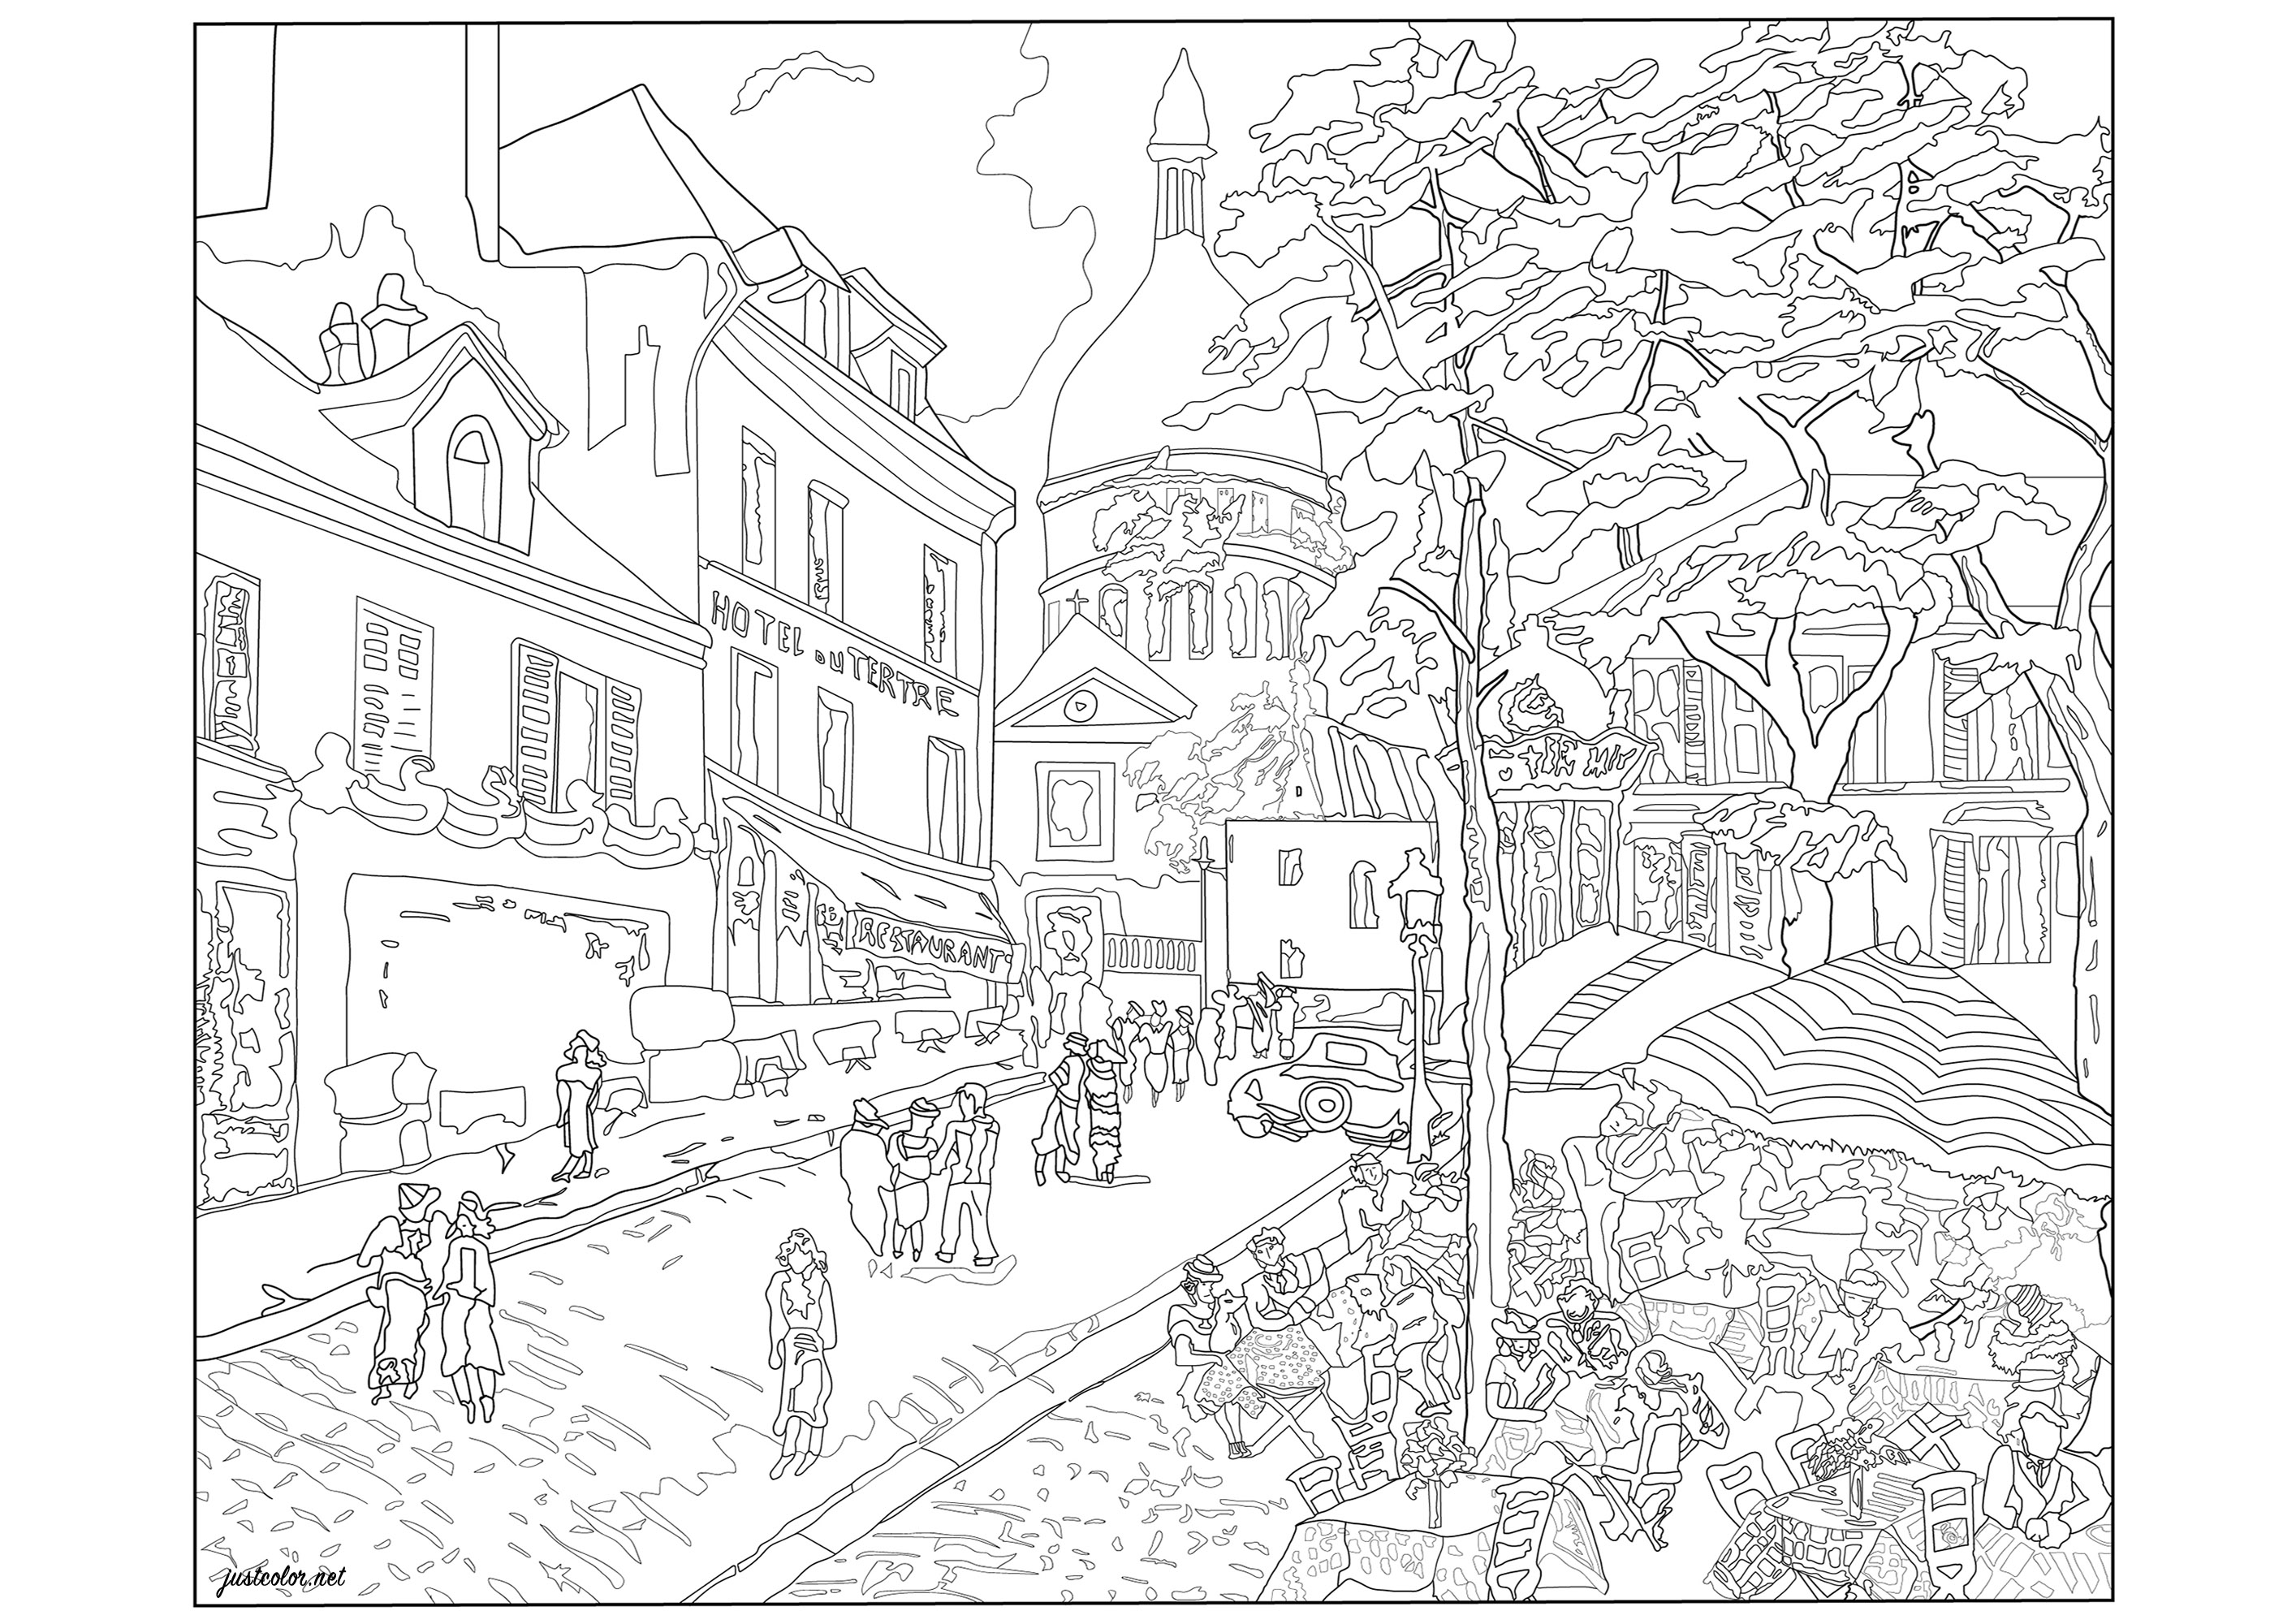 El animado barrio de Montmartre, en París. ¿Sabía usted? Montmartre es un antiguo pueblo, construido sobre una colina, que se anexionó a París en 1860.